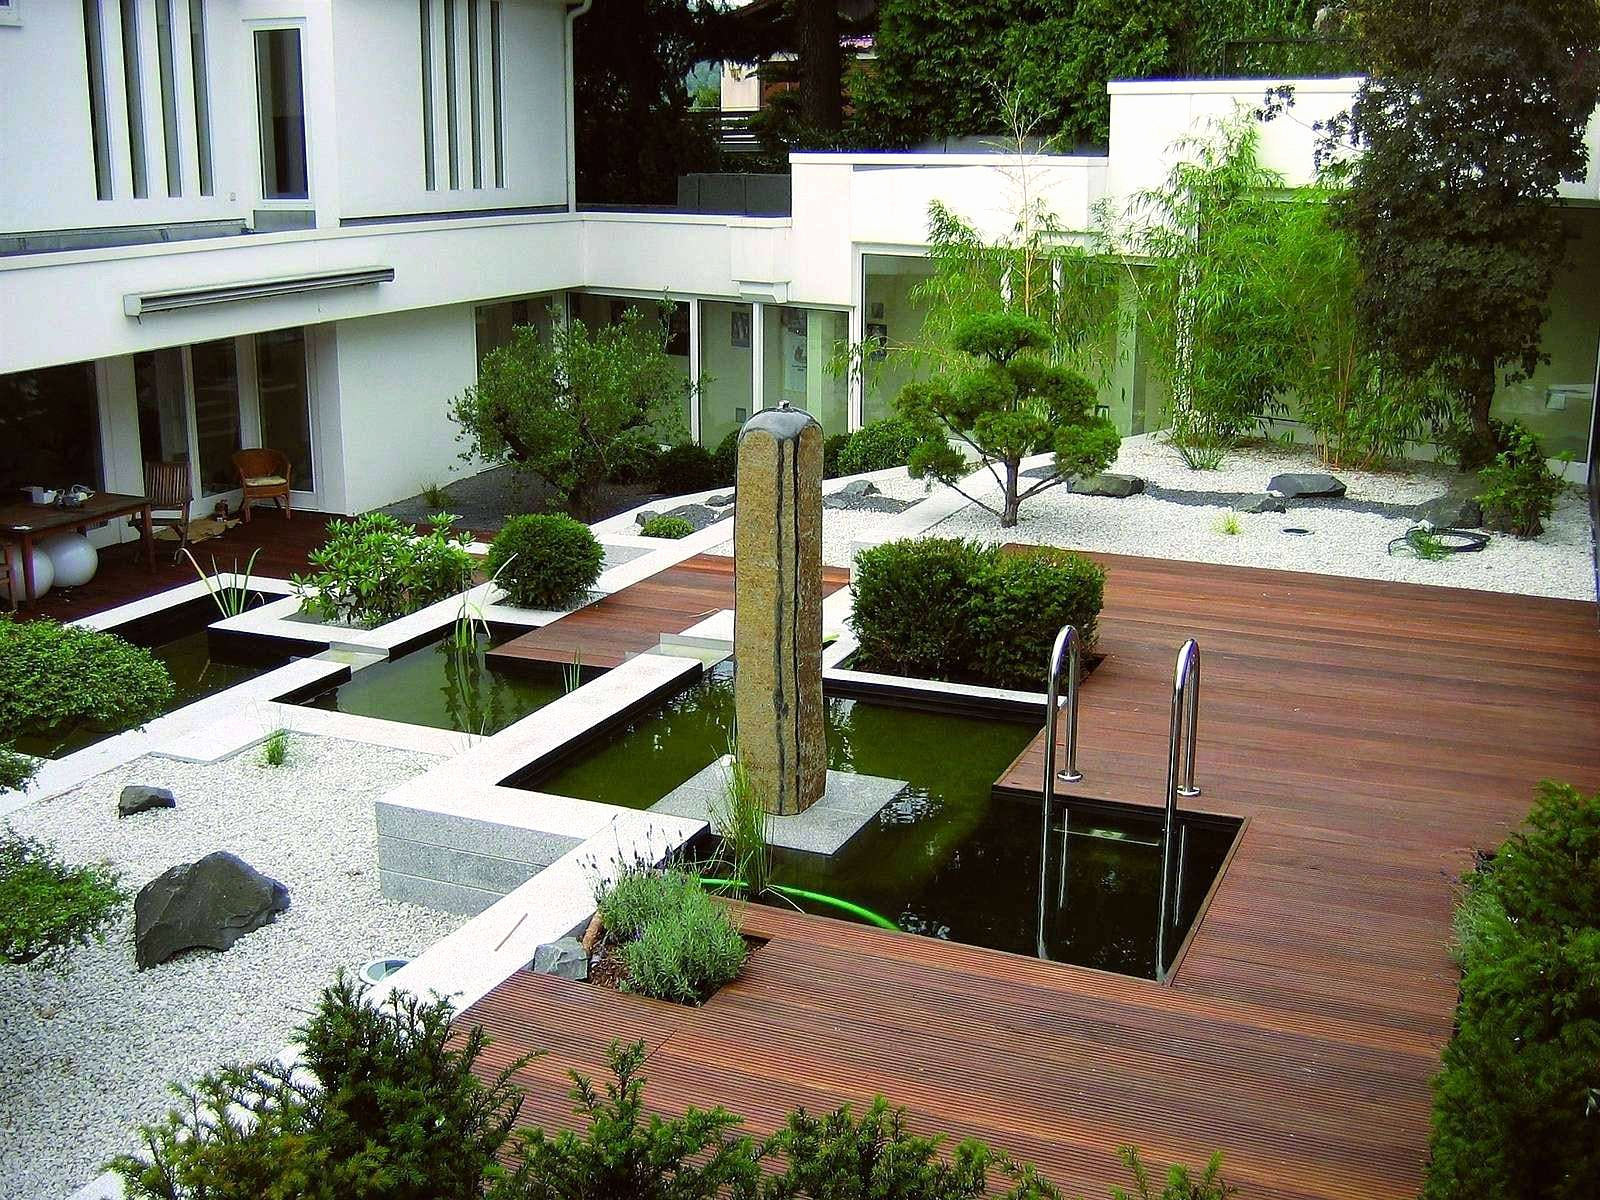 Kiesgarten Anlegen Luxus Terrasse Anlegen Ideen Luxus Terrassen Anlegen Bilder